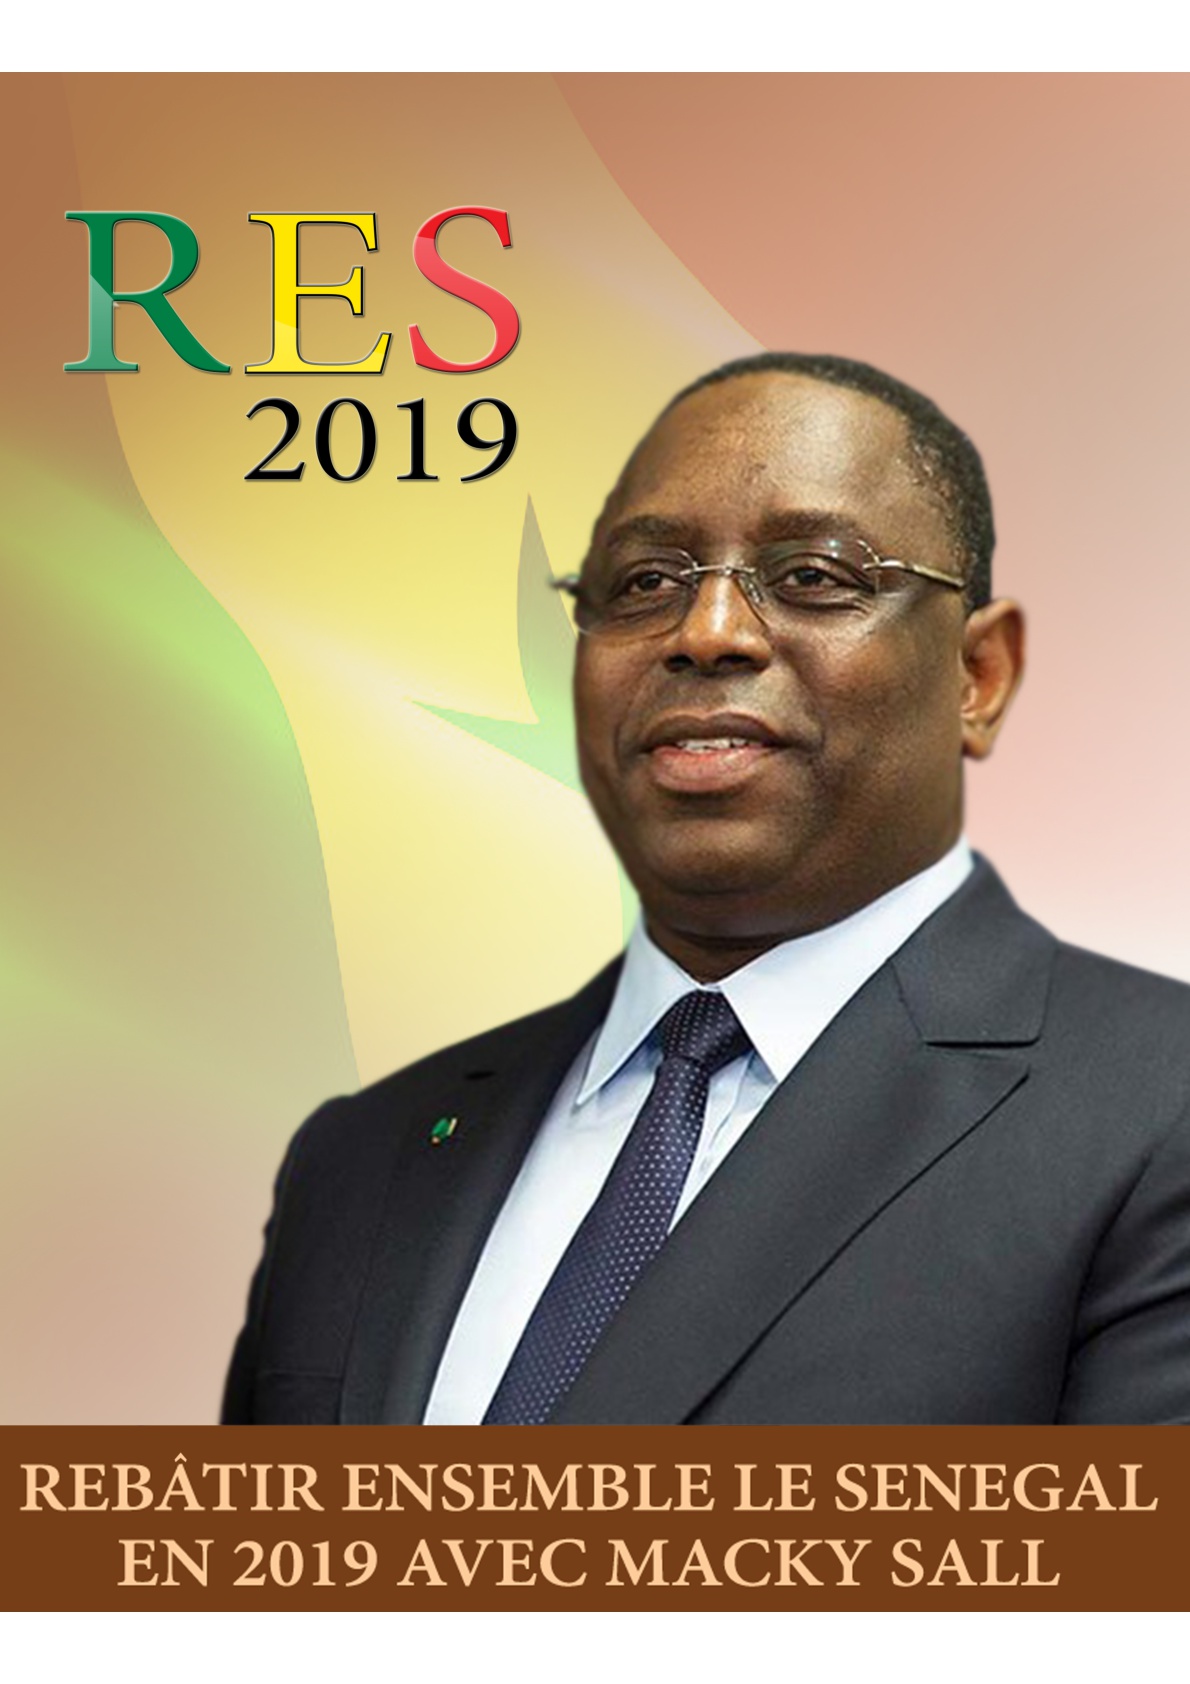 France : Me Ousmane Ngom lance son mouvement dénommé Rebâtir Ensemble le Sénégal (R.E.S) à Paris